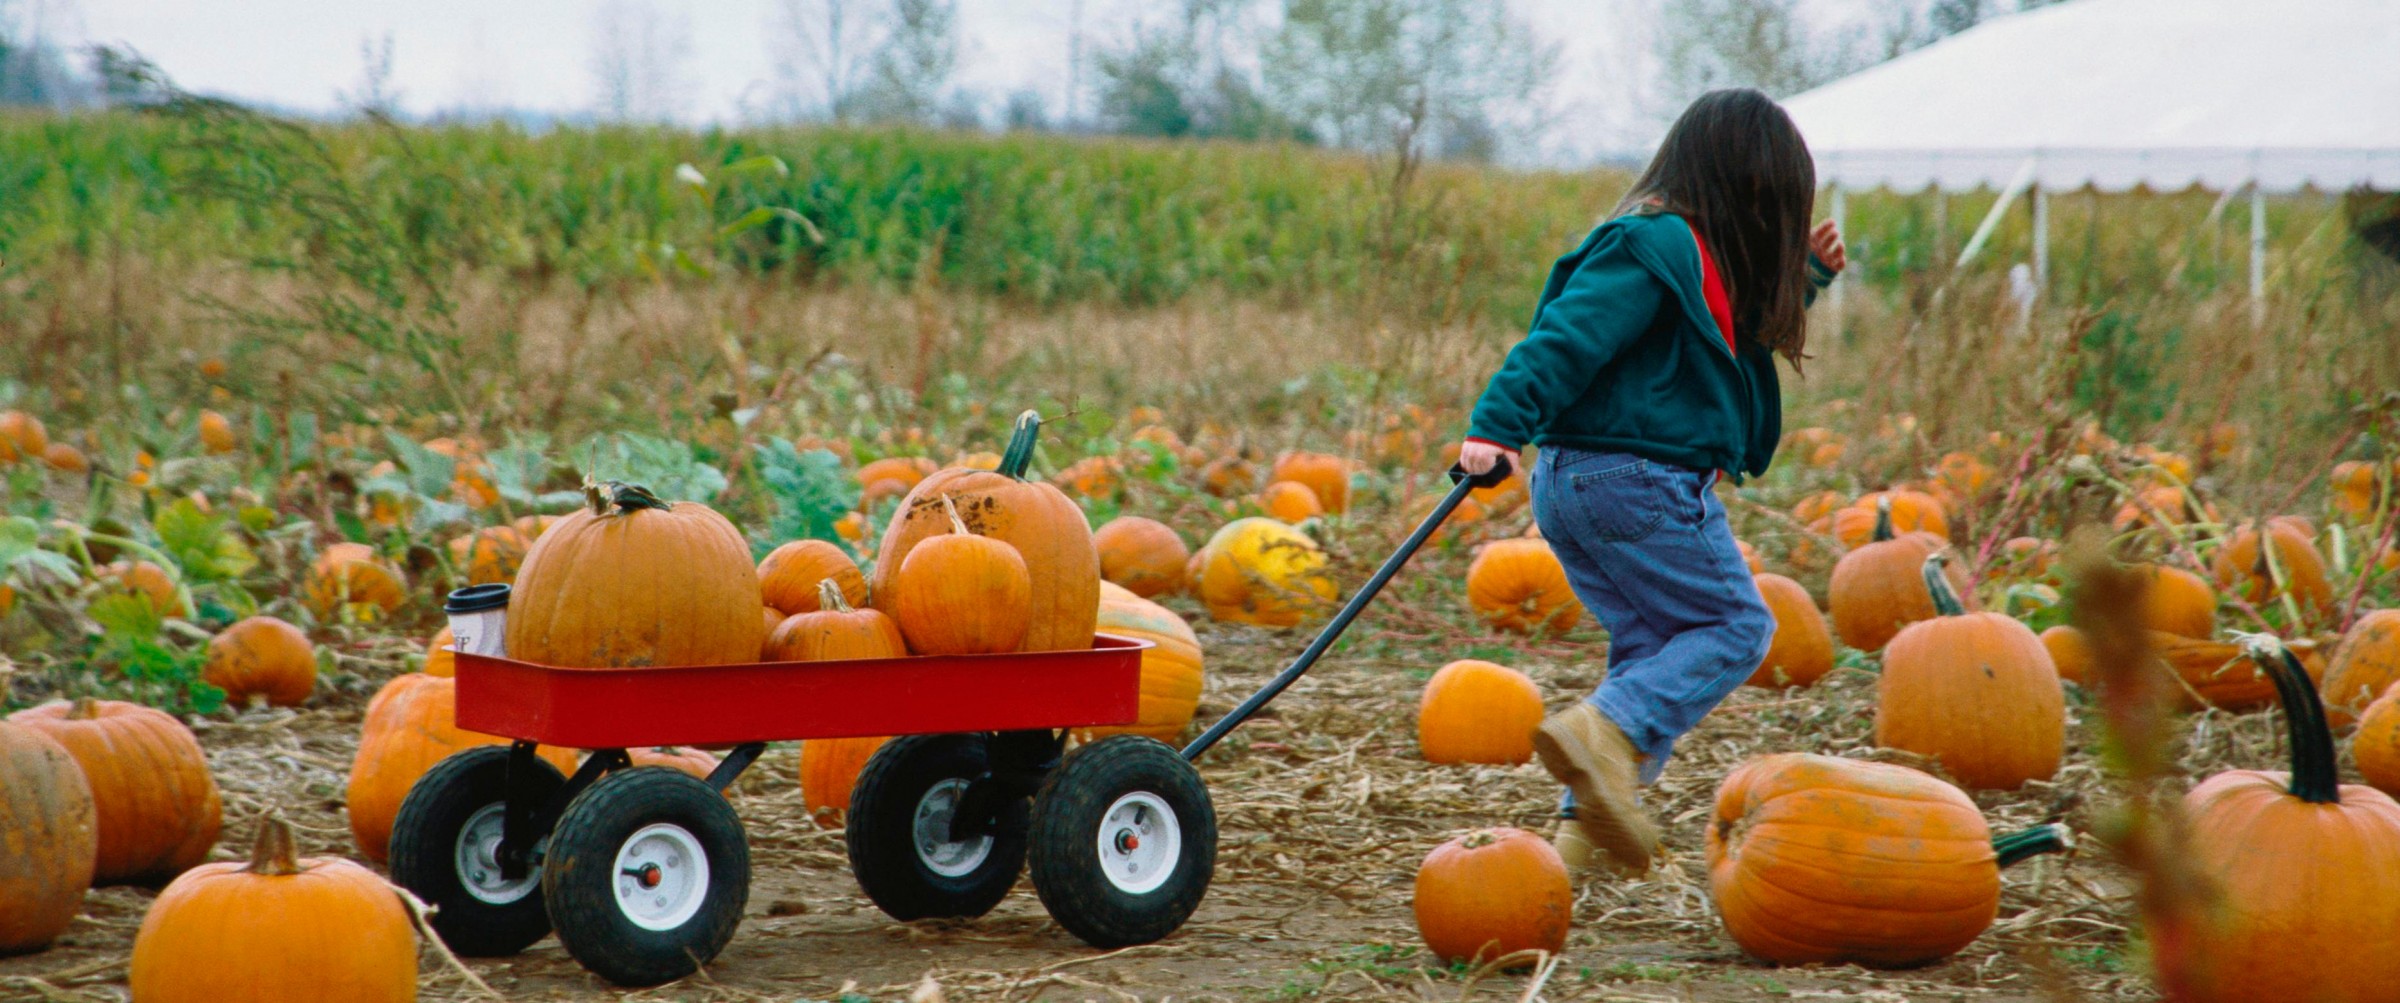 Child pulling cart full of pumpkins through a pumpkin patch